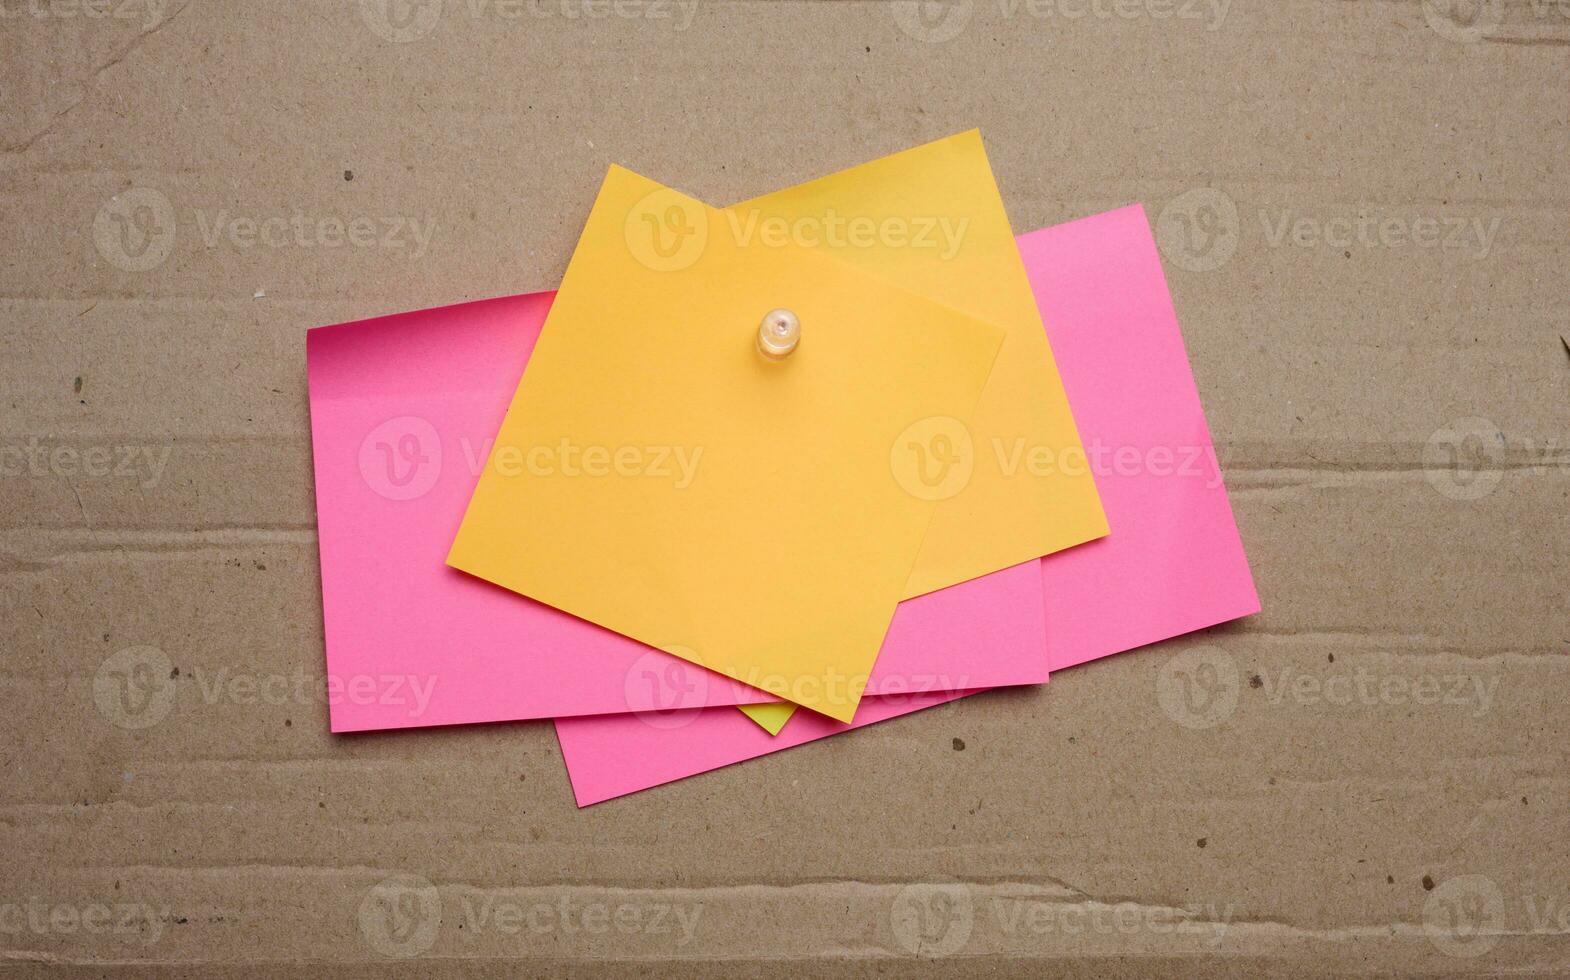 vistoso papel blanco pegatinas adjunto con un botón, espacio para notas y etiquetas foto